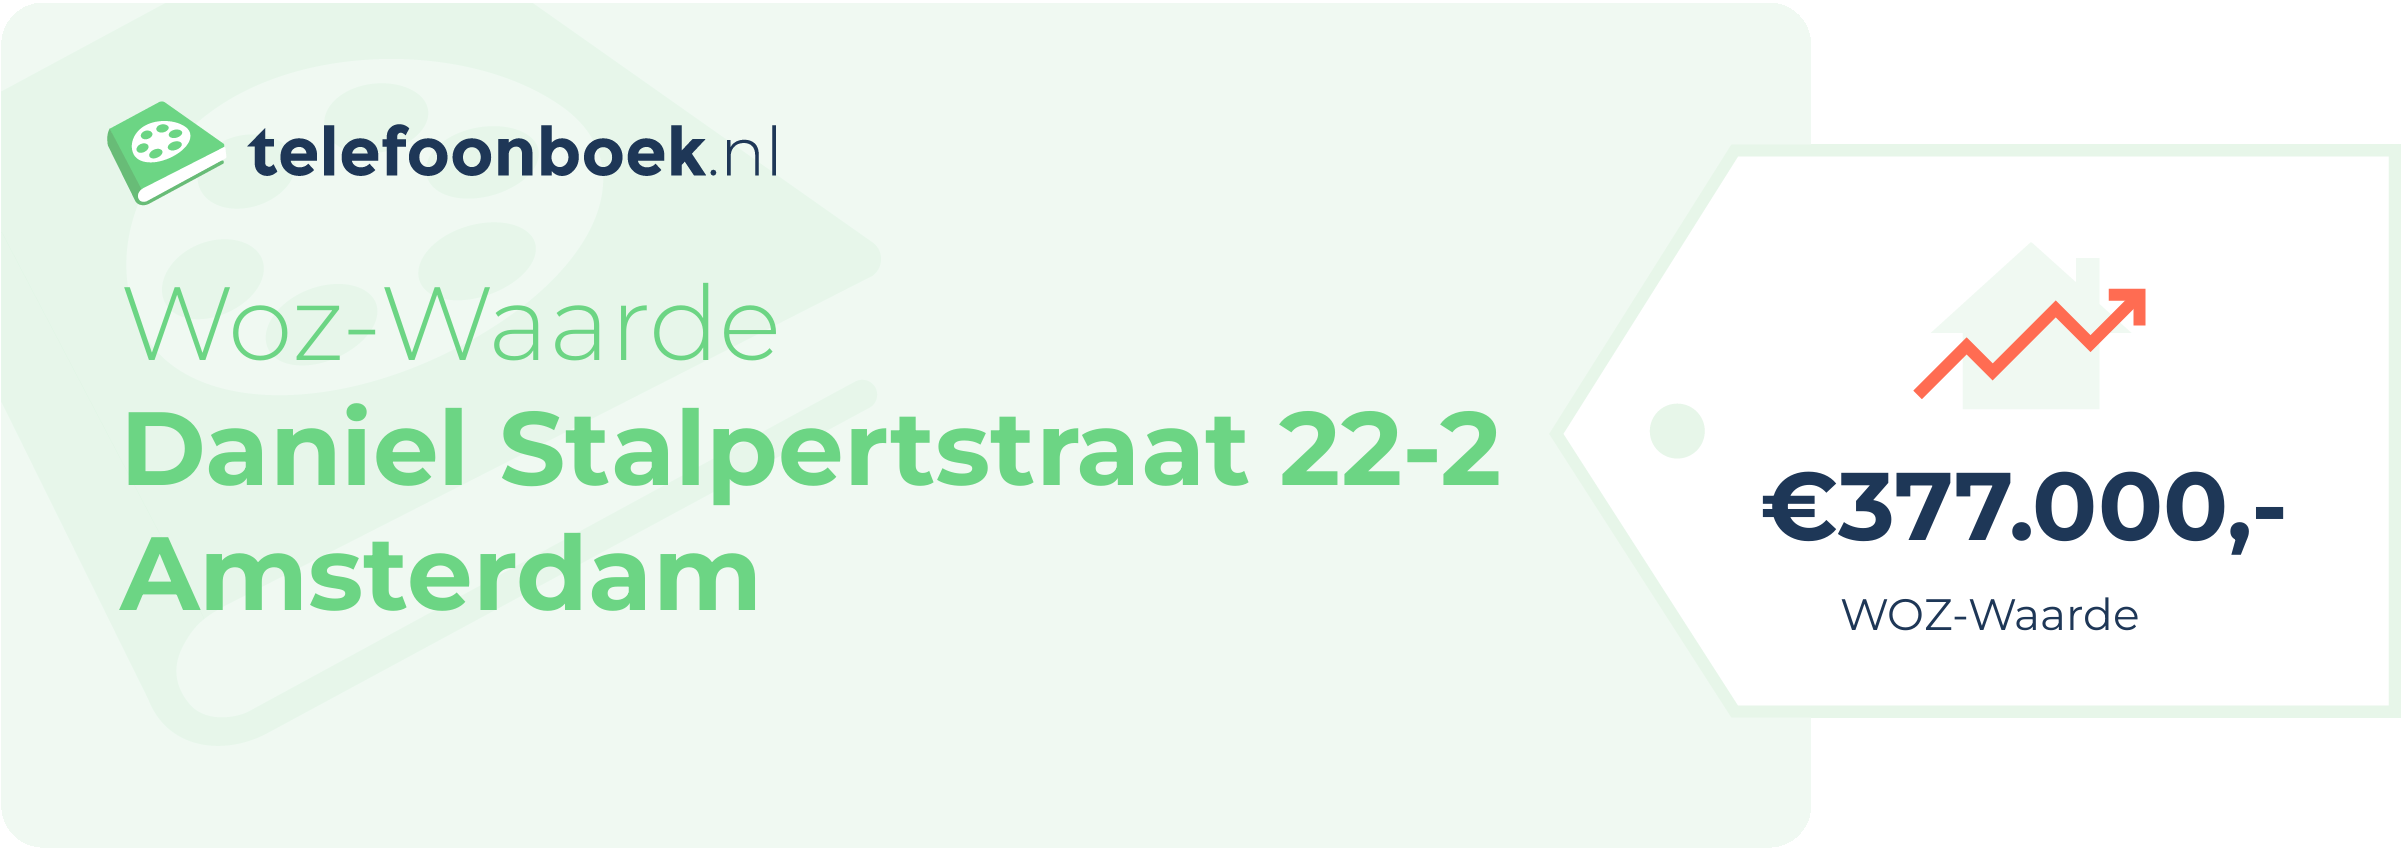 WOZ-waarde Daniel Stalpertstraat 22-2 Amsterdam